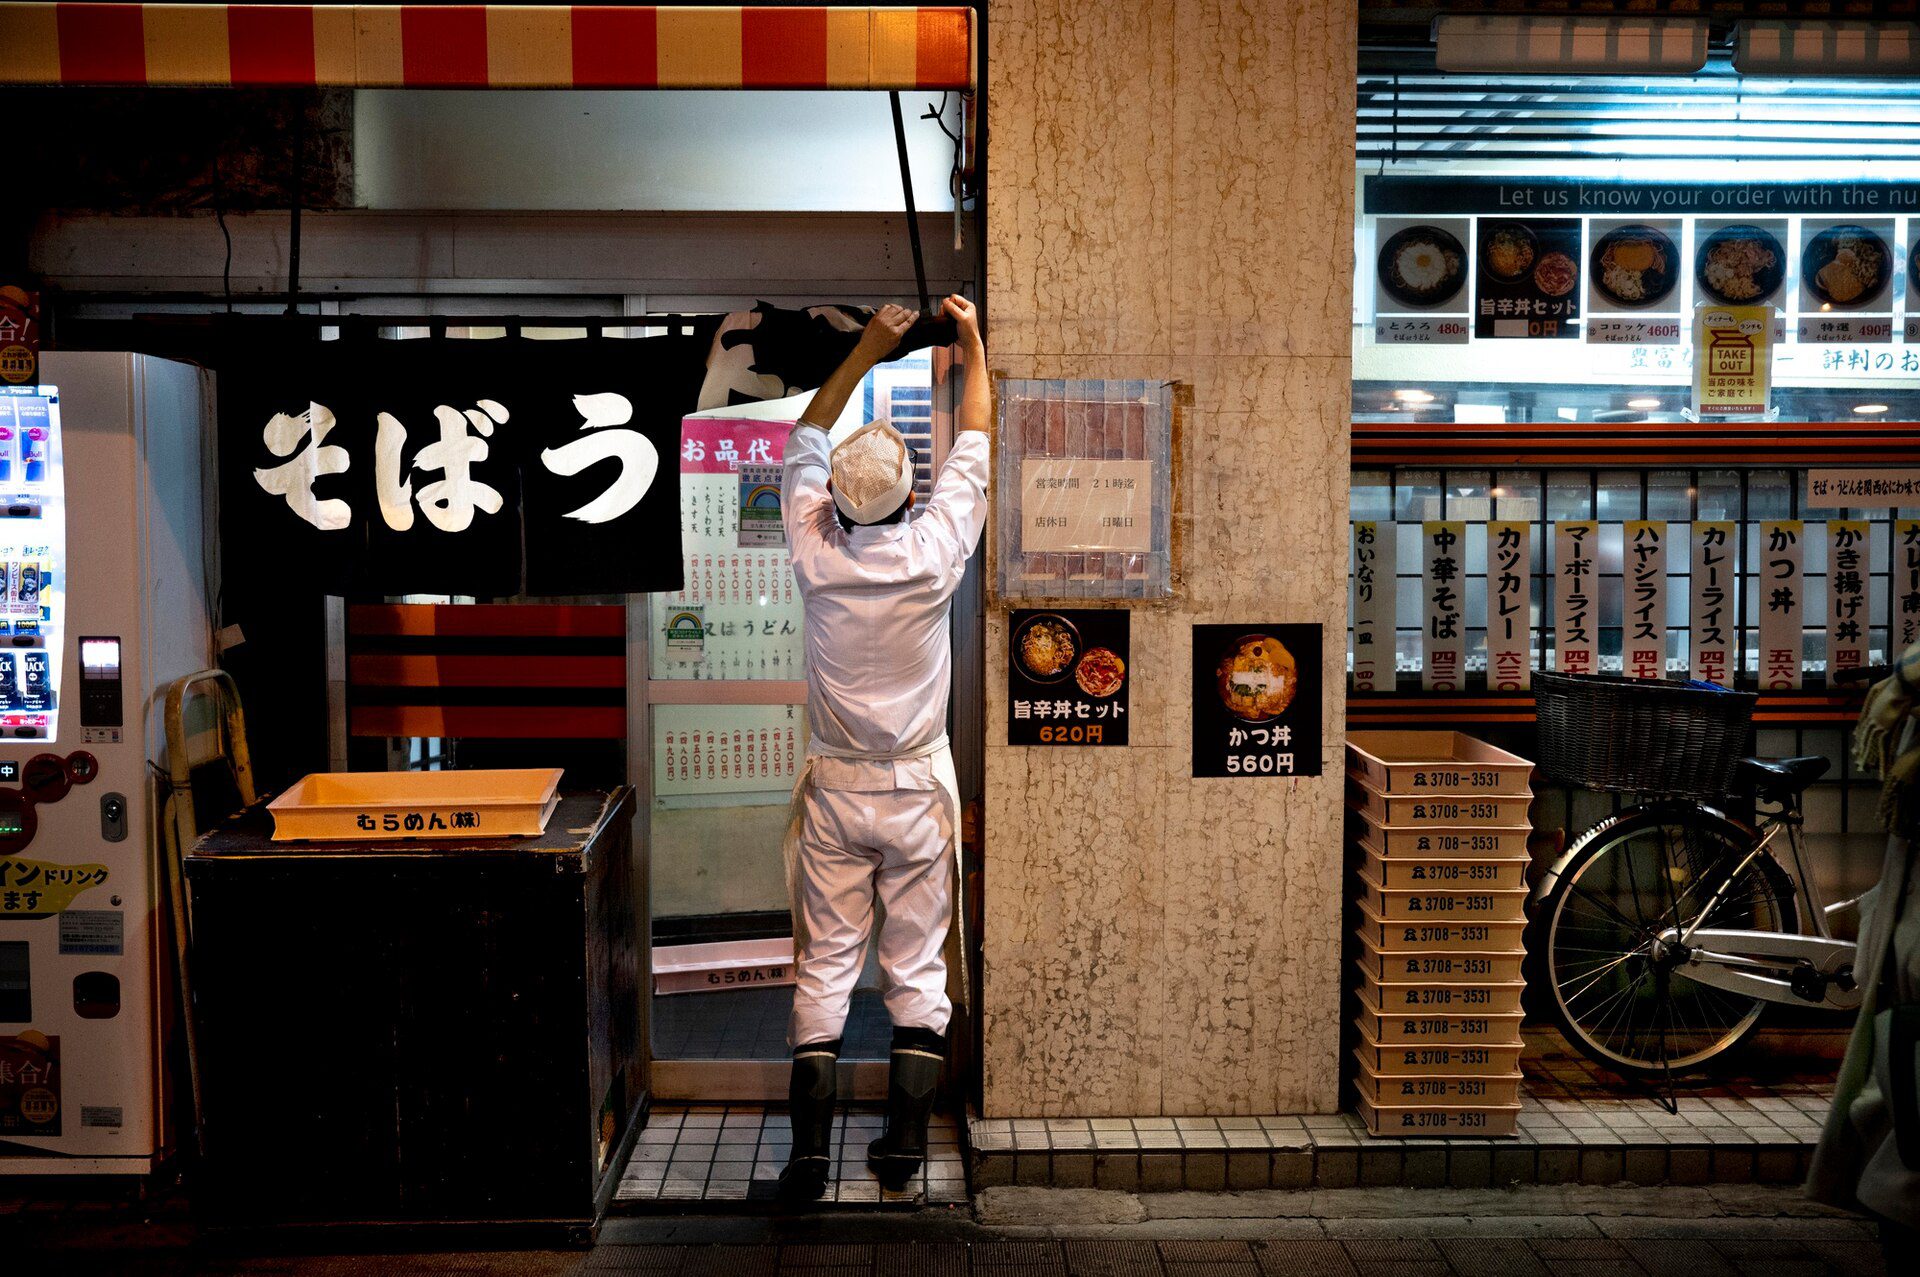 Restaurants in Tokyo